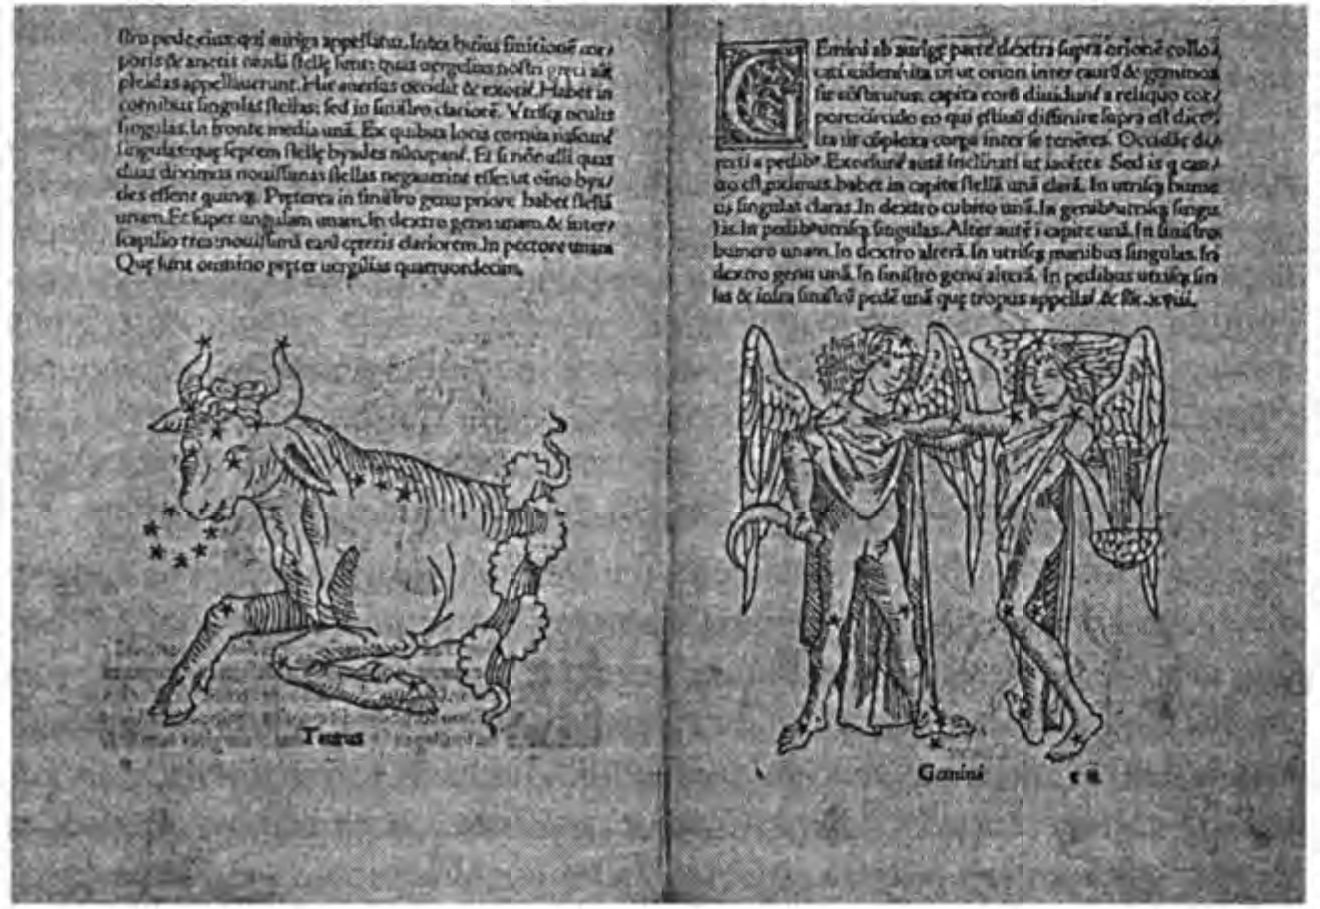 Фигуры Зодиака из «Поэтикой Астрономикон» Гюйгенса, 1482 г. Текст Гюйгенса содержал, подобно тексту Аратуса, собрание популярных легенд о созвездиях. (Британская Библиотека)